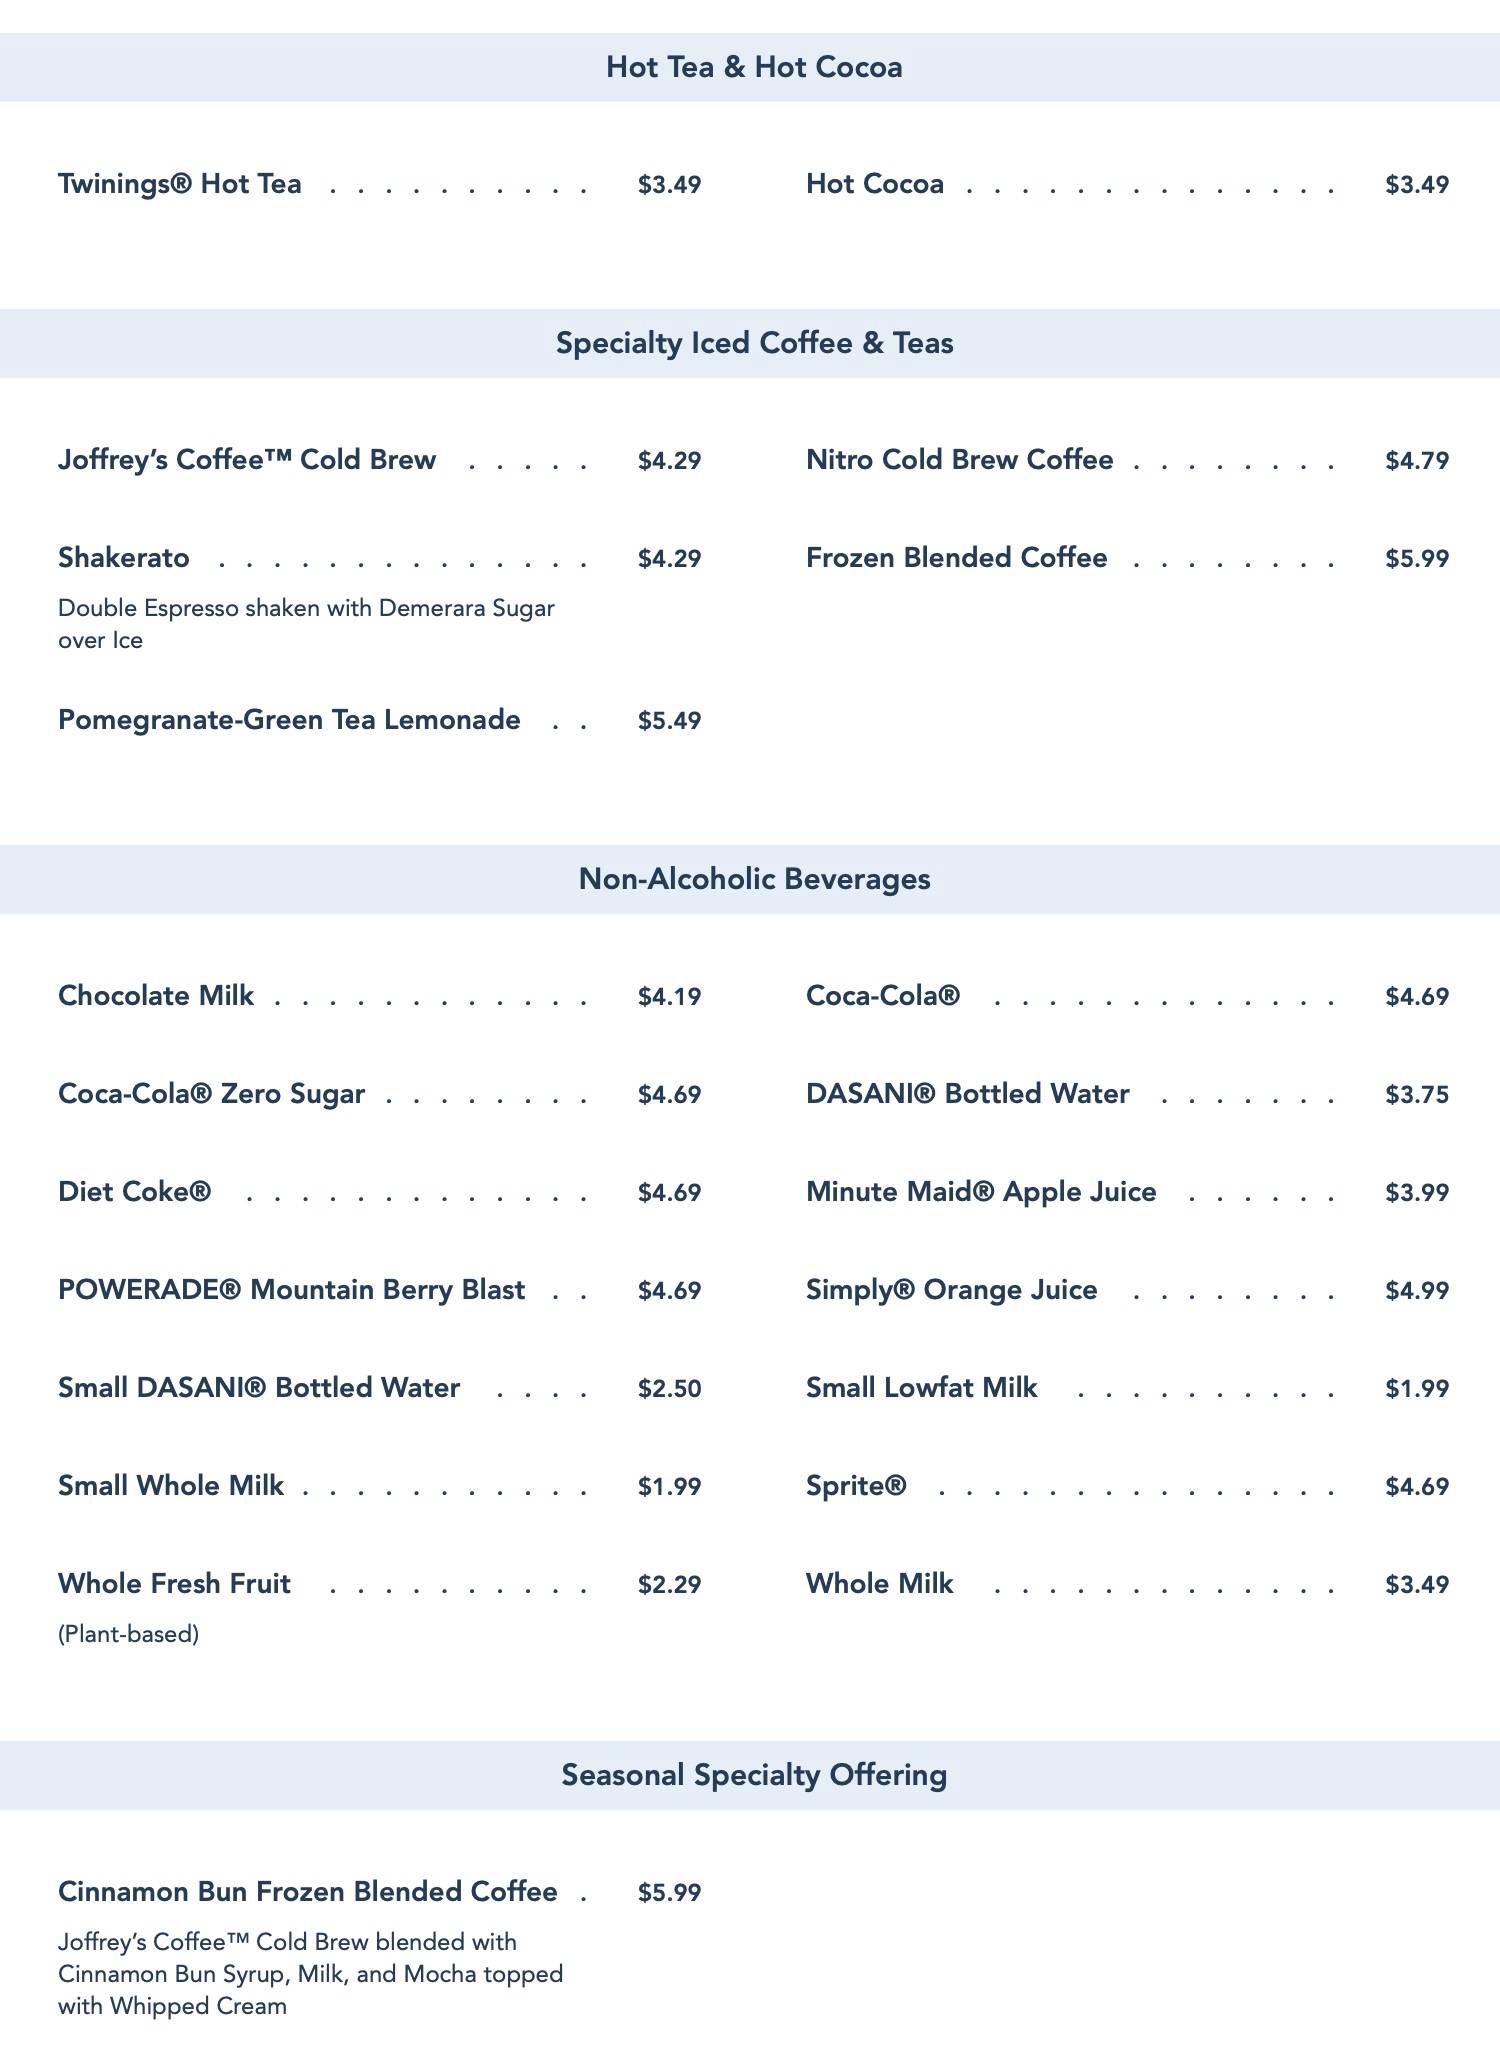 Carousel Coffee menu